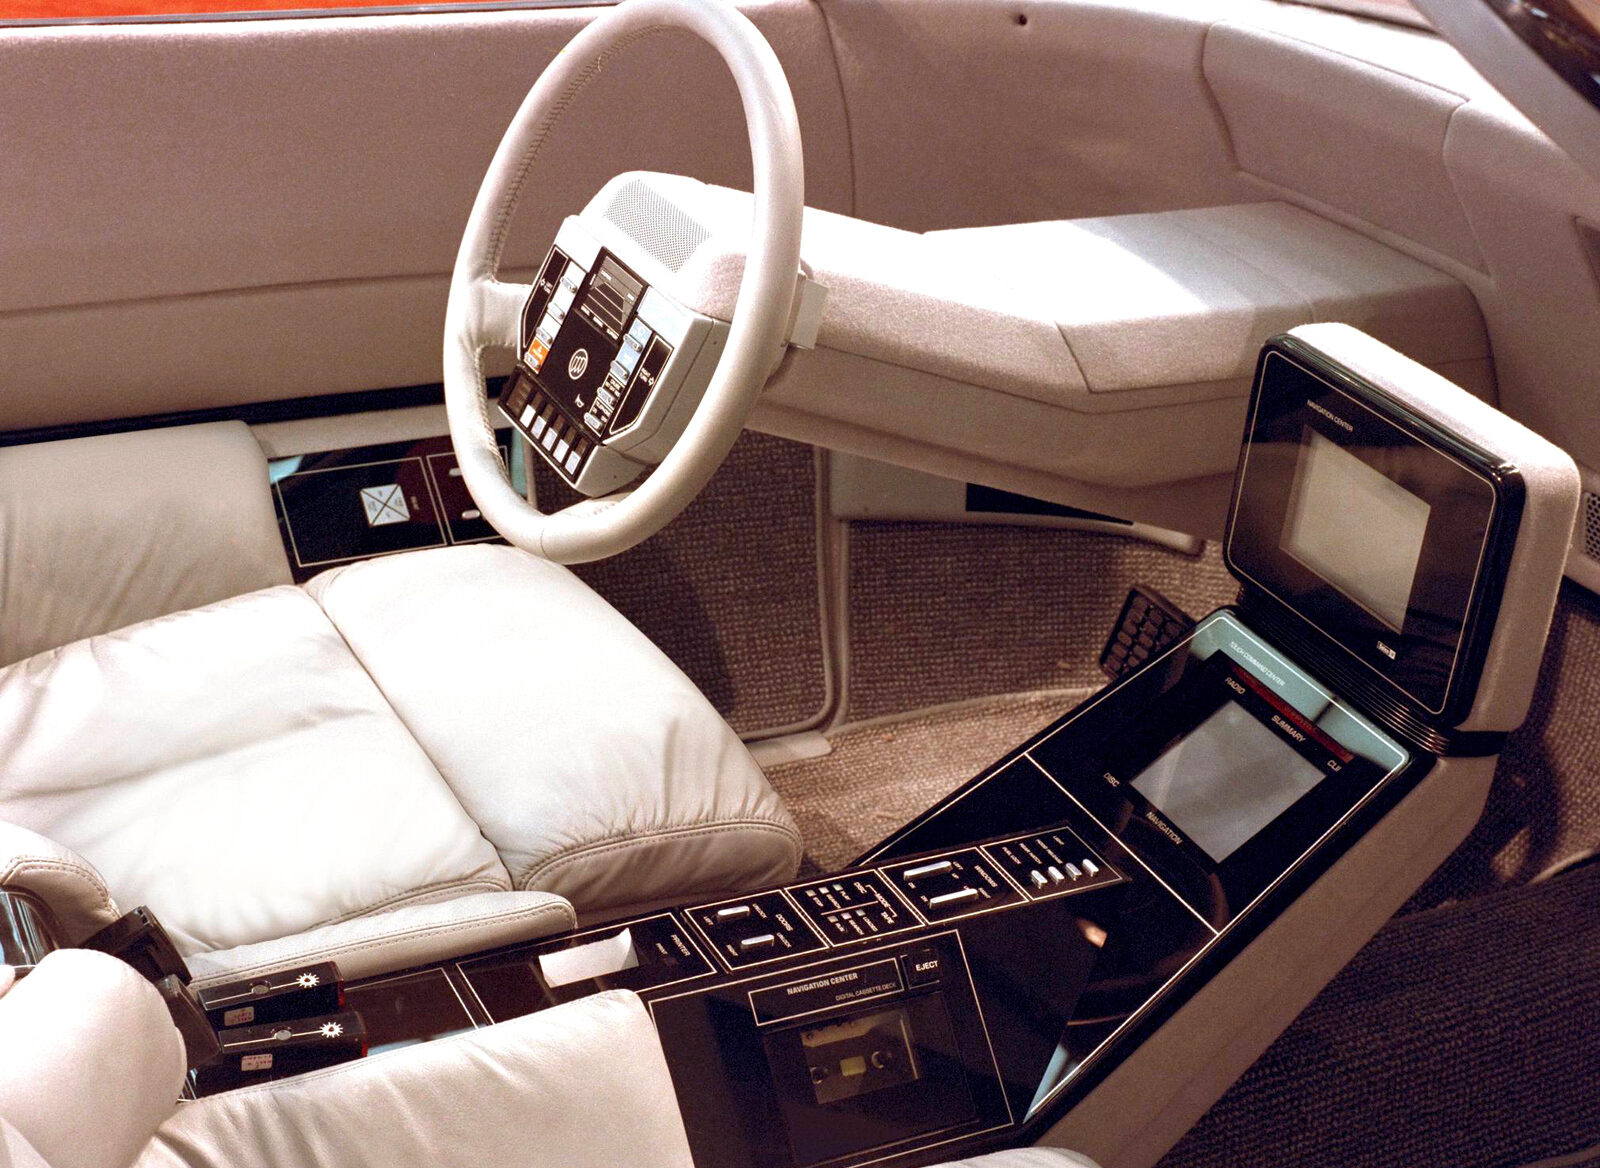 1983 Buick Questor Concept